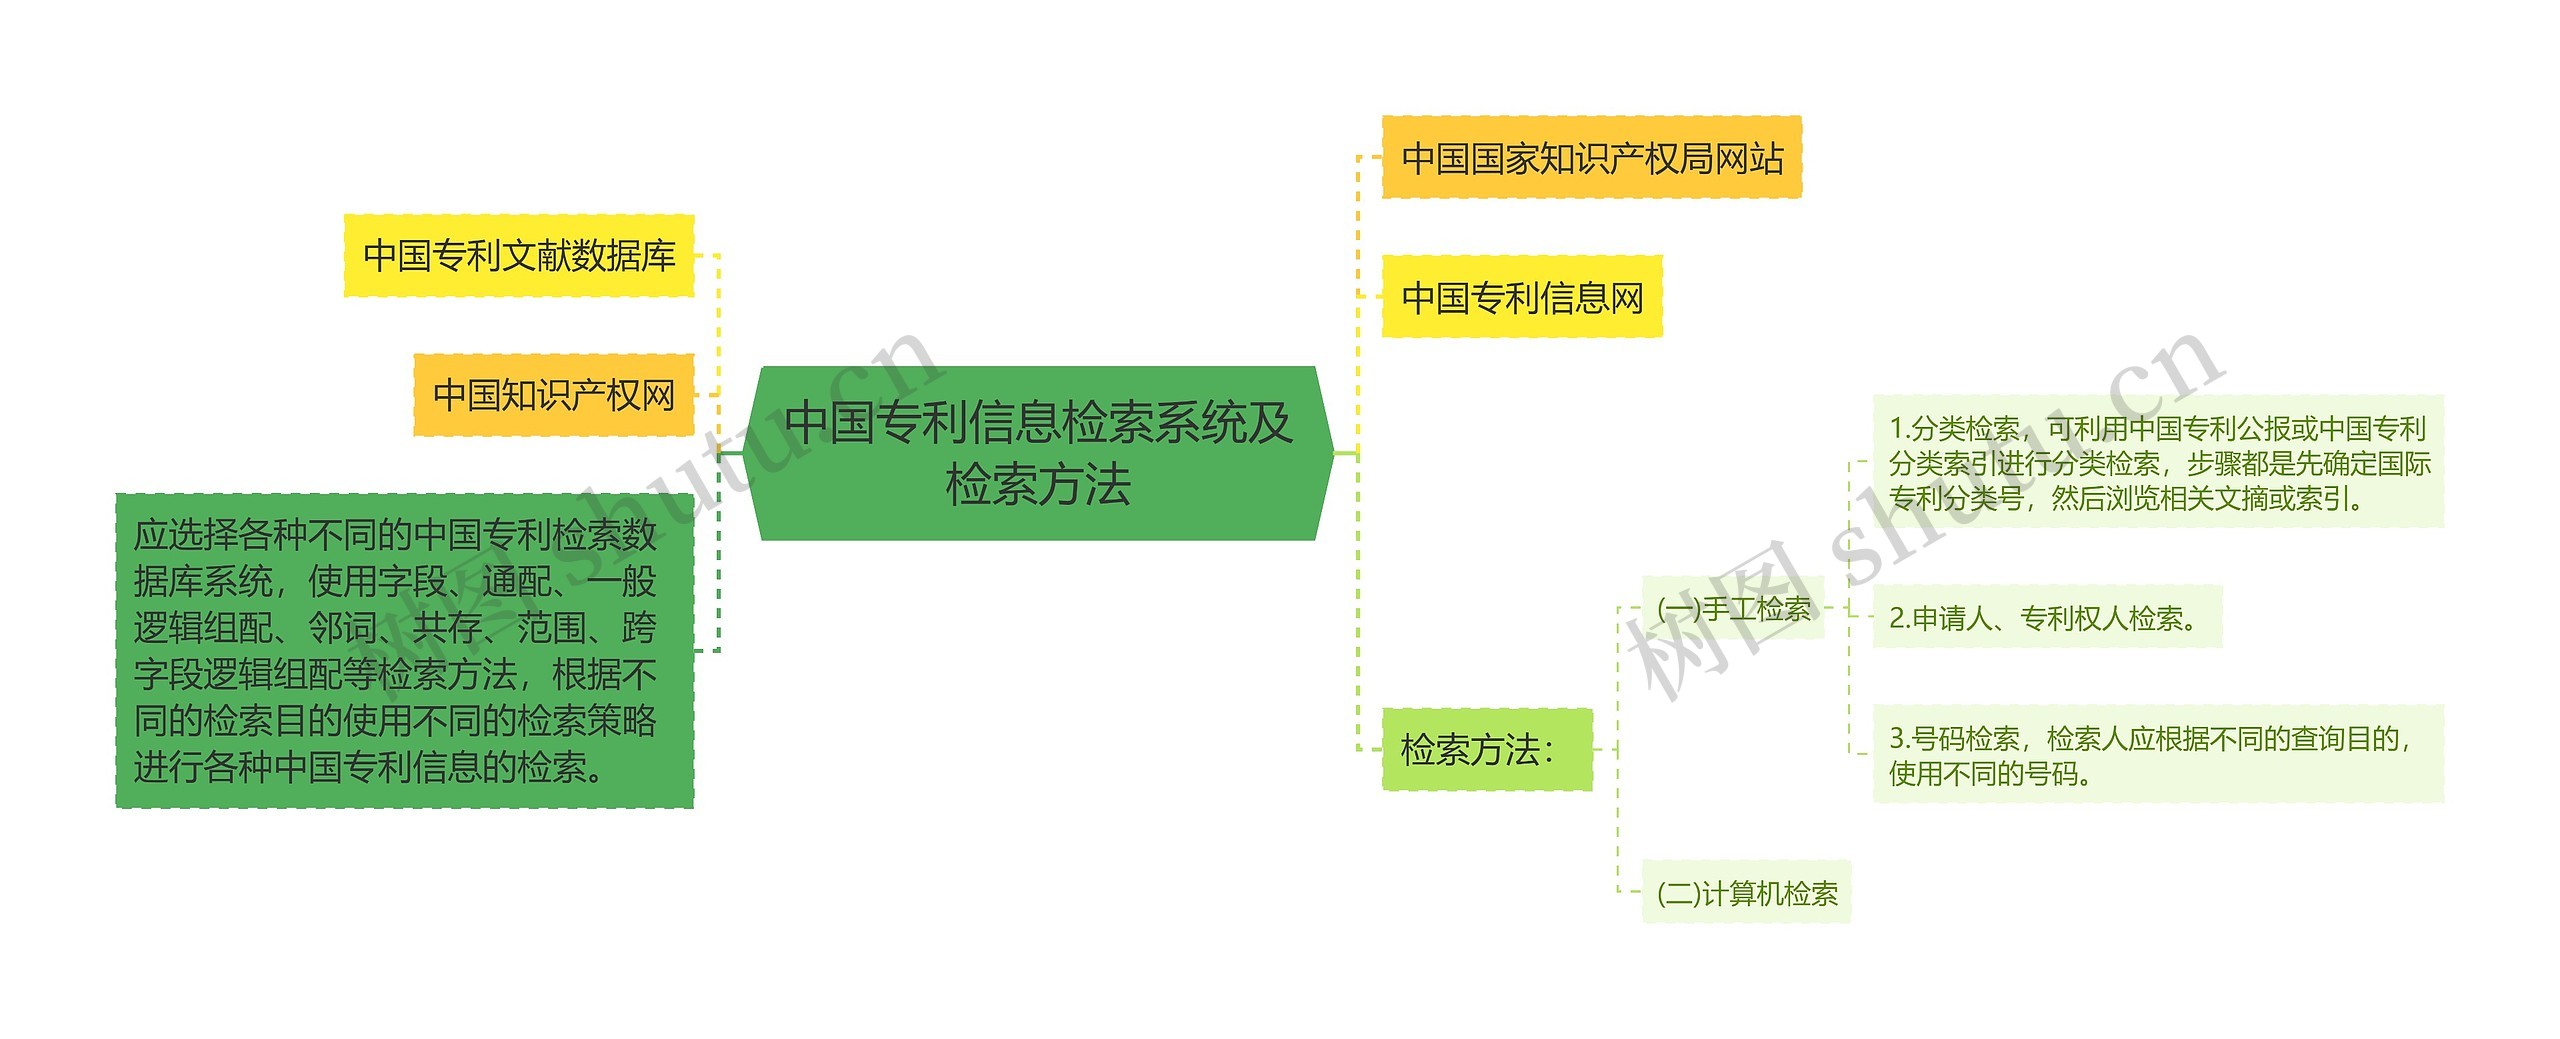 中国专利信息检索系统及检索方法思维导图